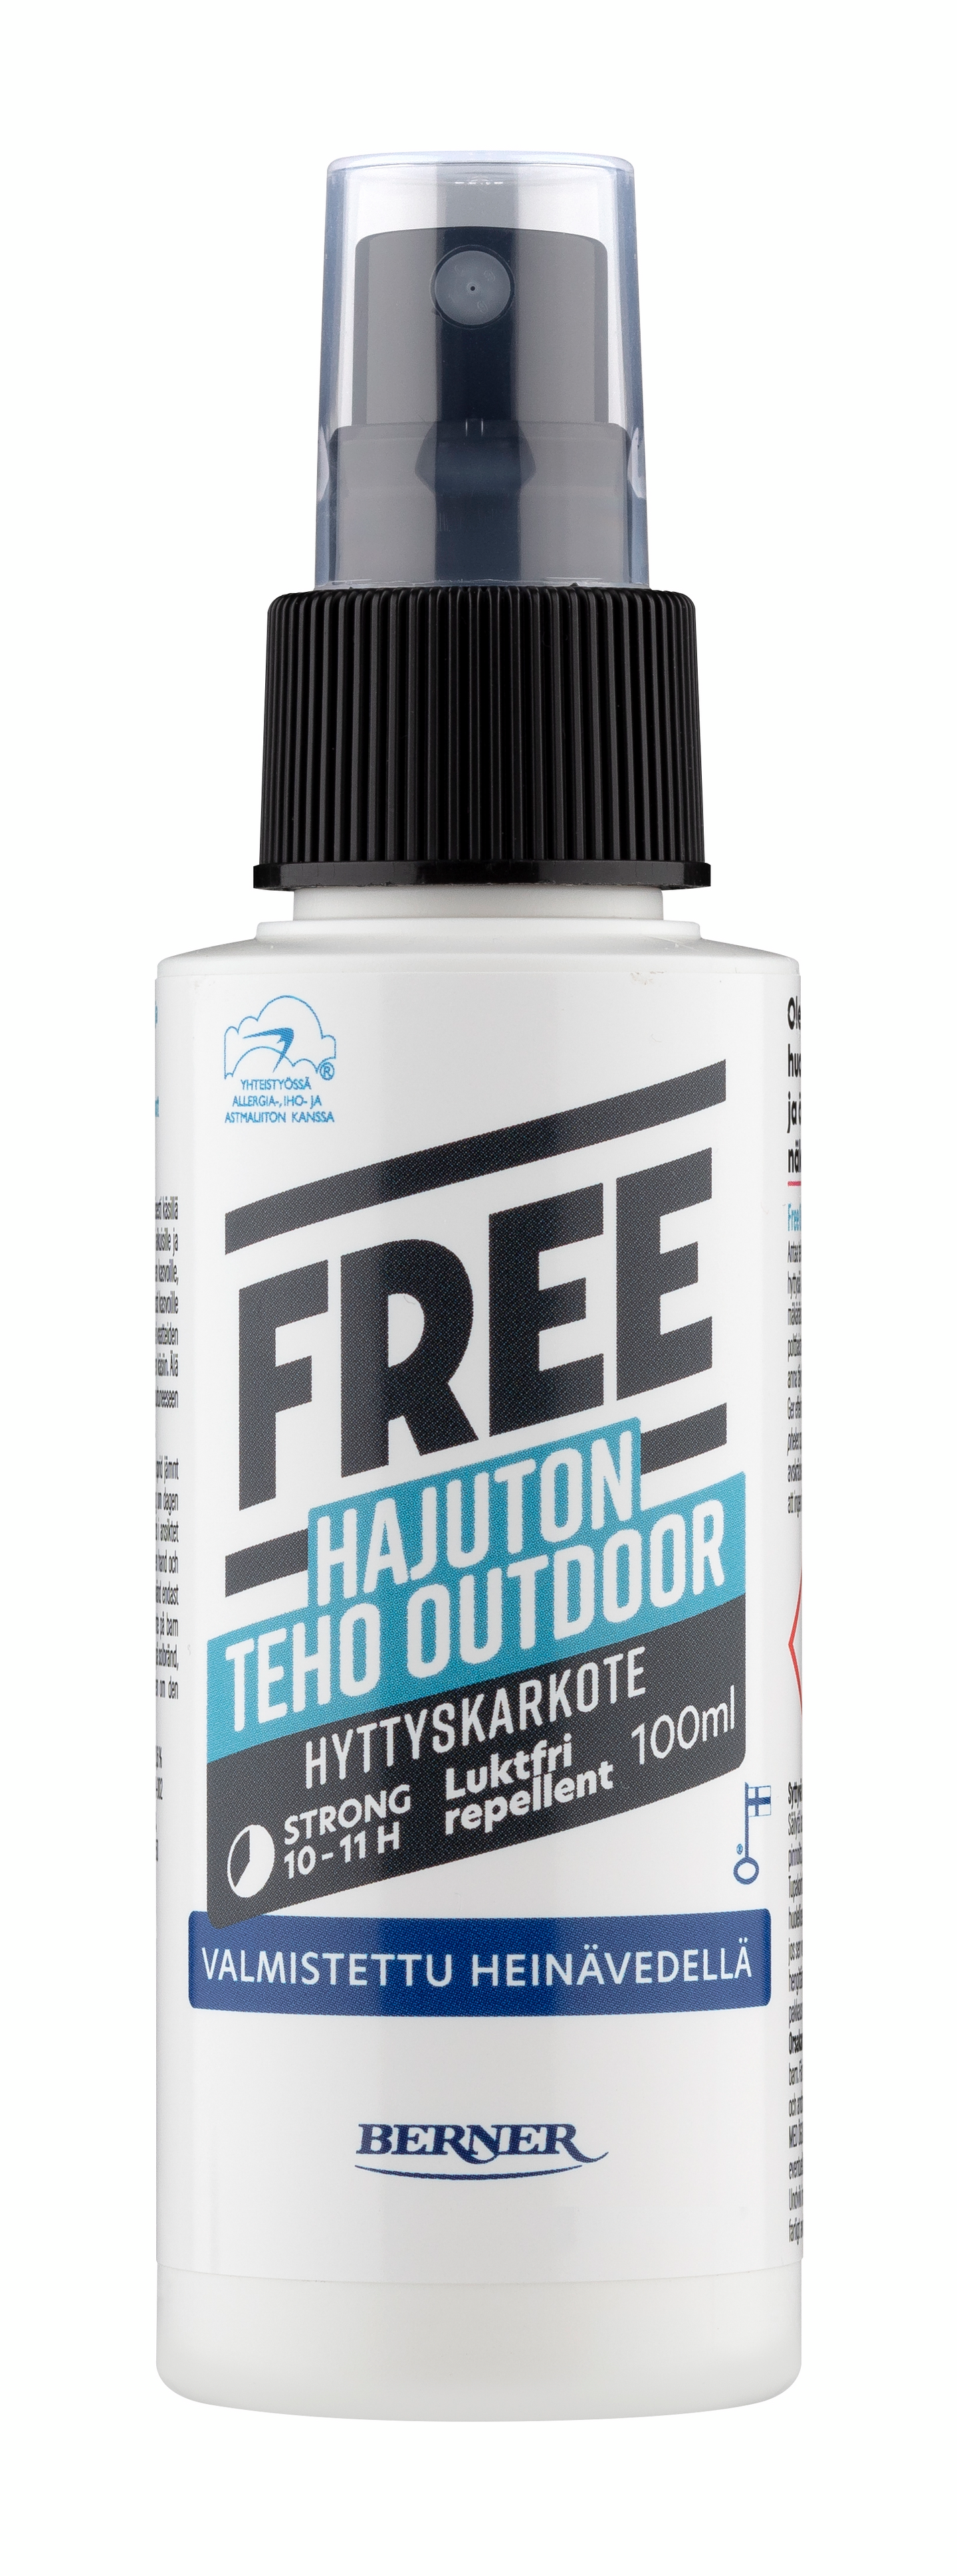 Free Teho Outdoor hyttyskarkote 100ml hajuton